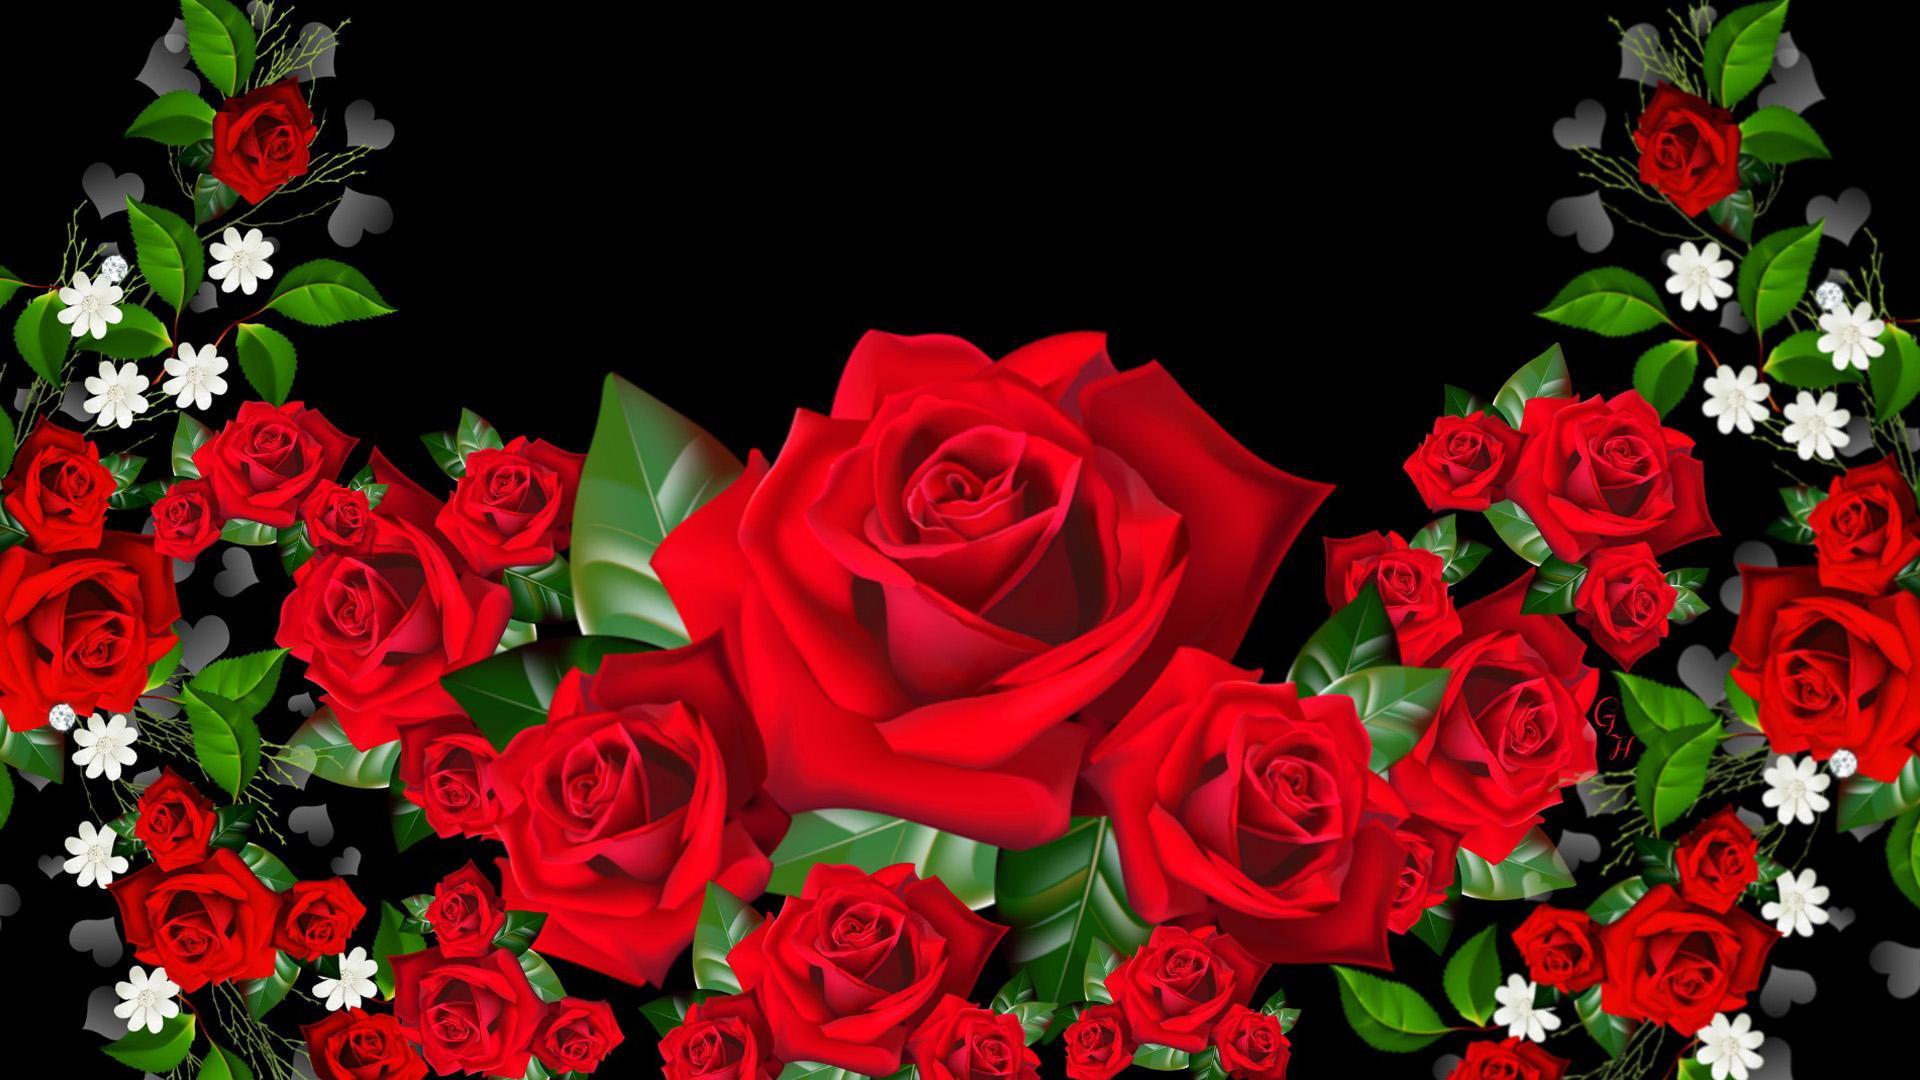 1920x1080 3D Rose Wallpaper Tải xuống miễn phí - 3D Flower Wallpaper Rose